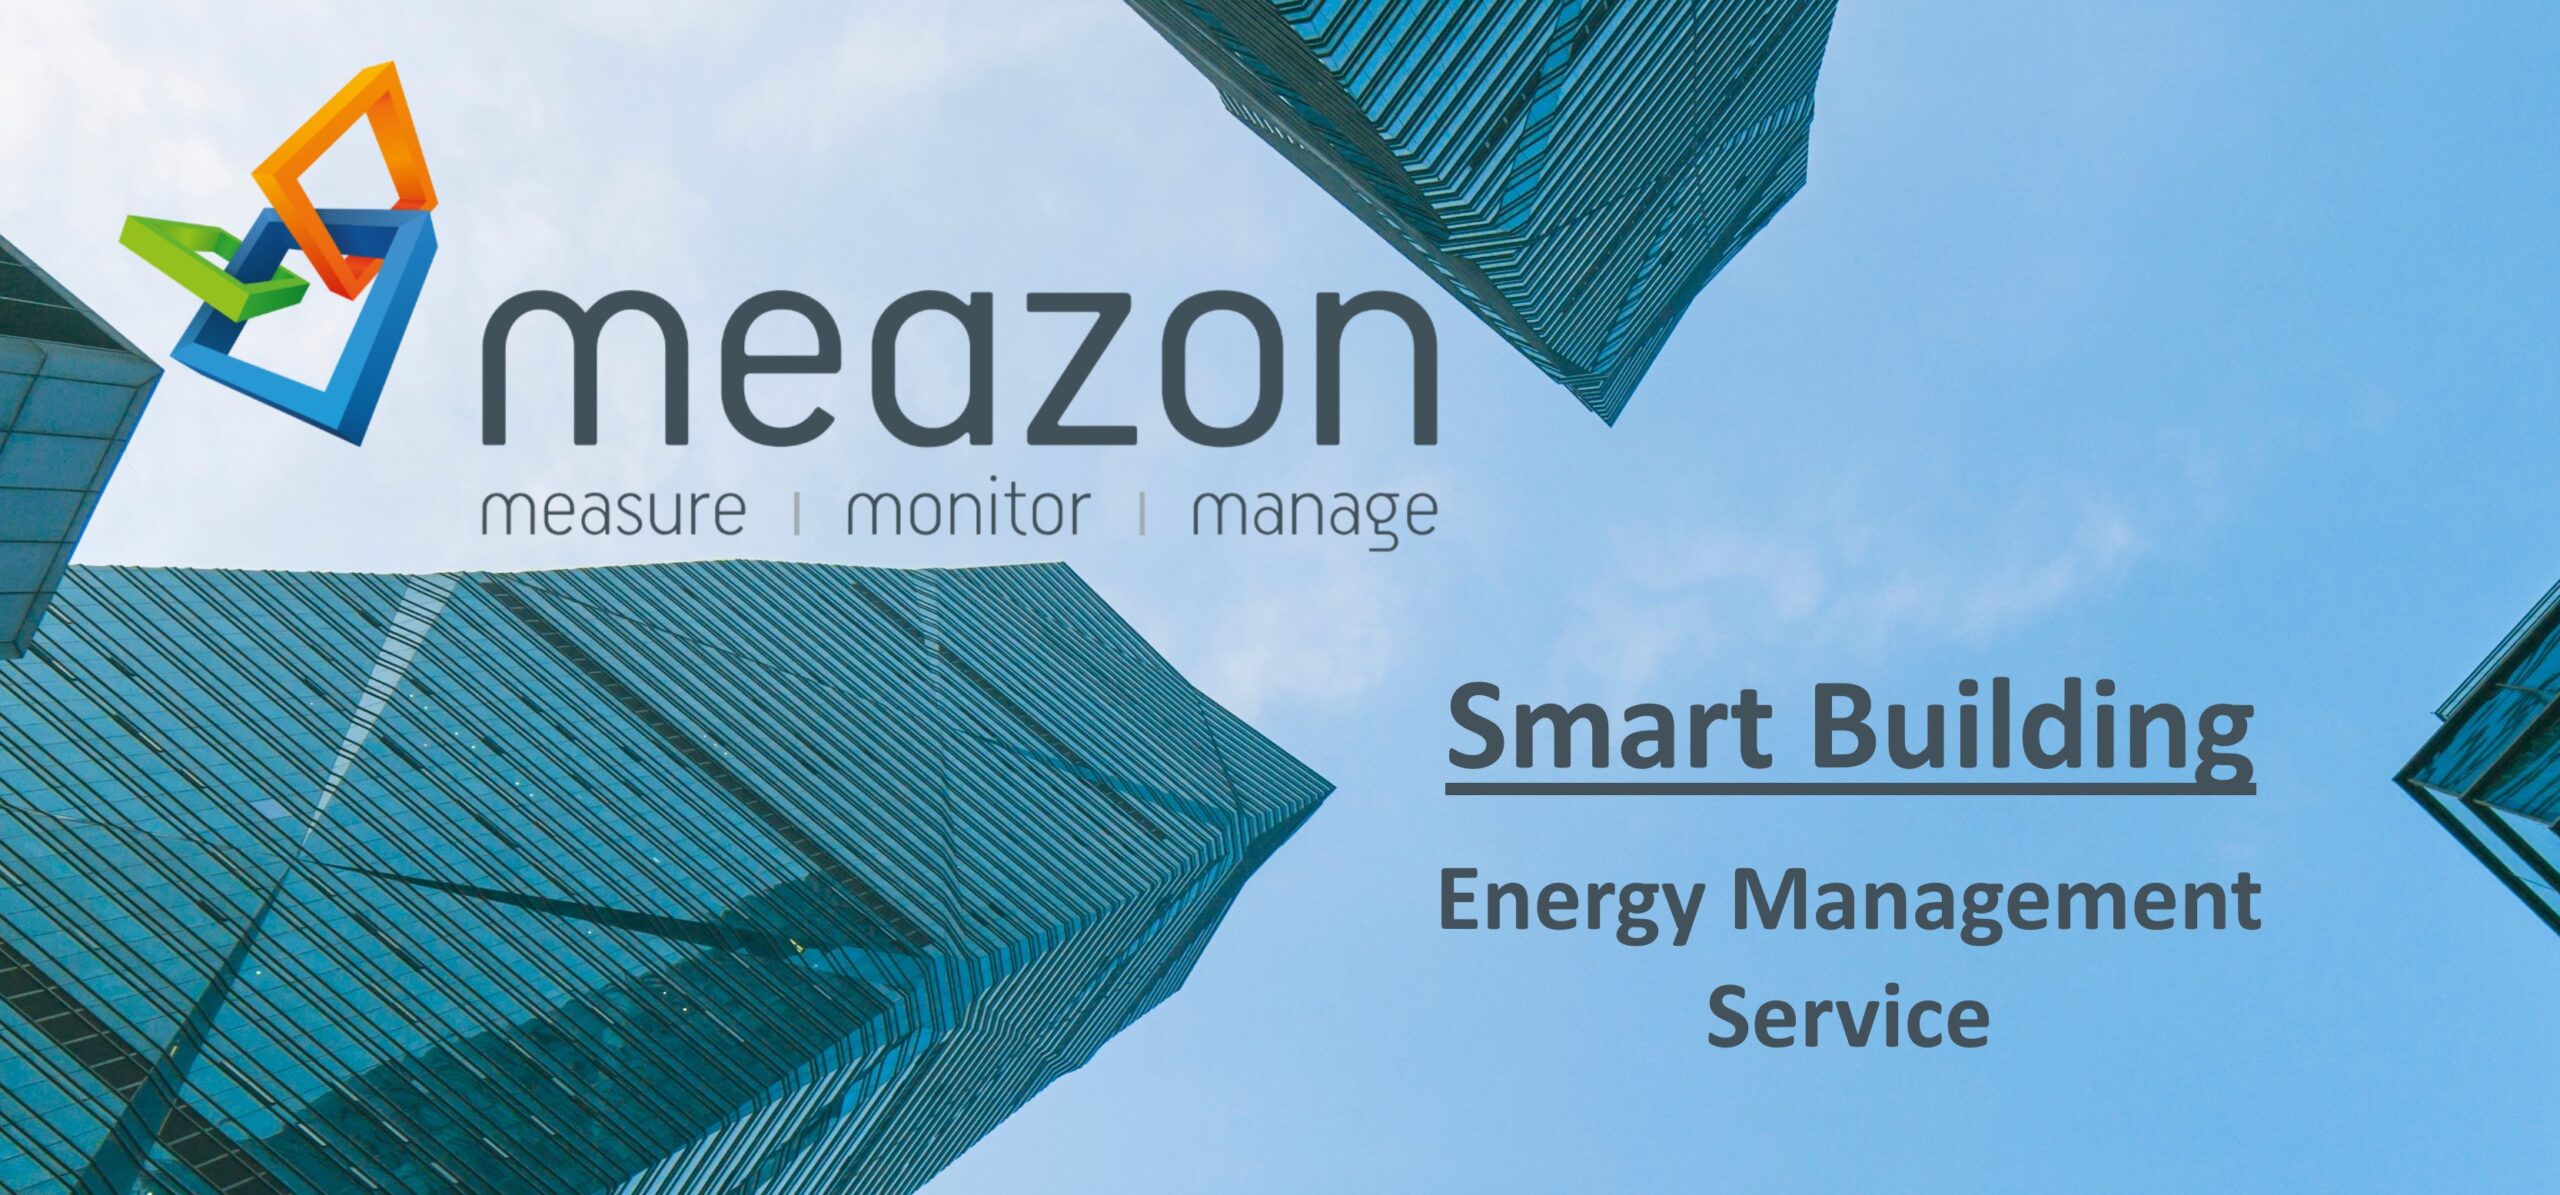 Meazon Energy Management Building Service